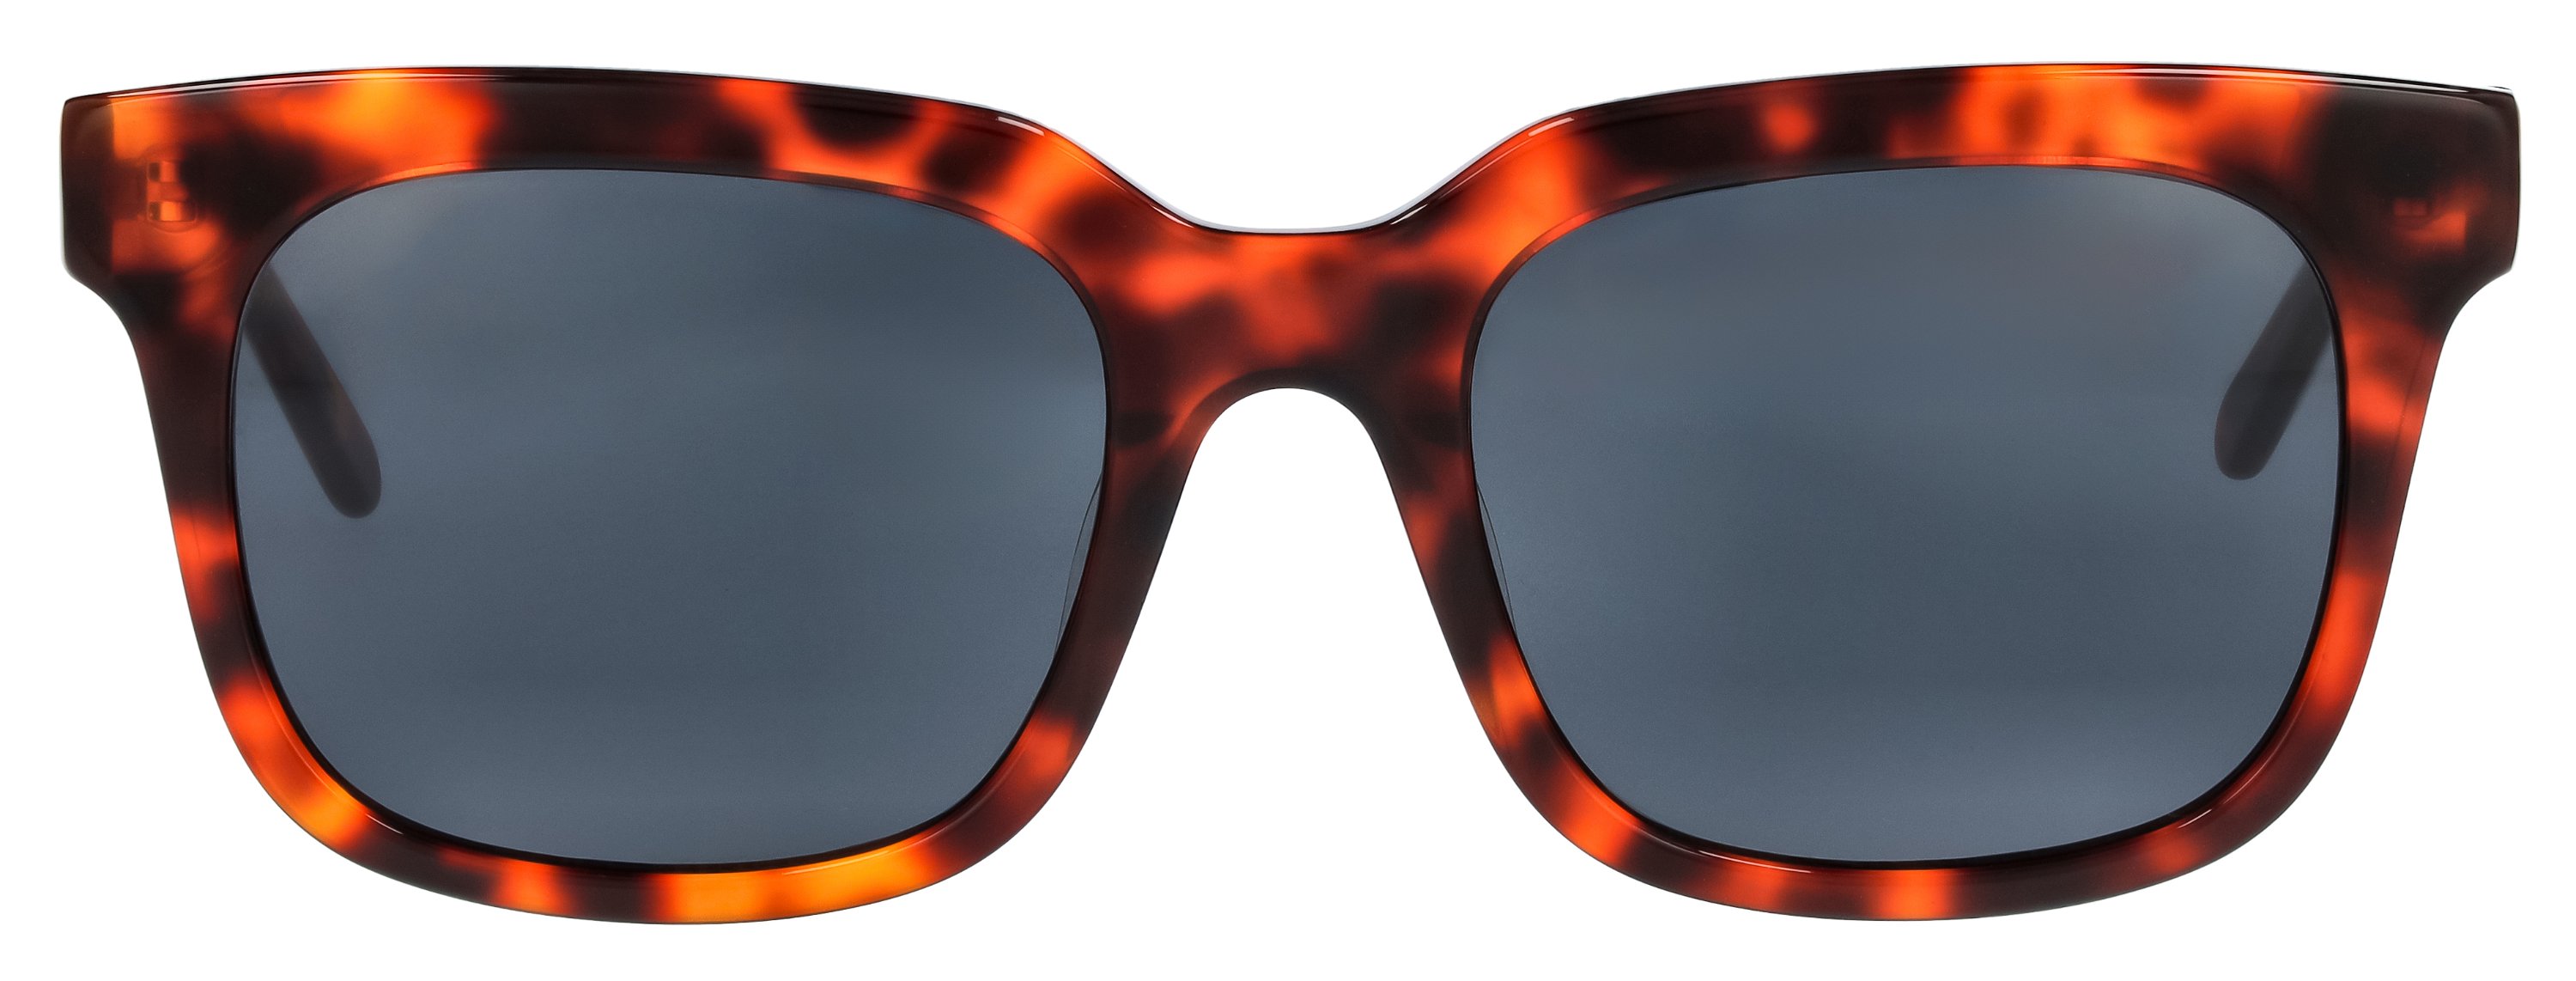 Das Bild zeigt die Sonnenbrille 141181 von der Marke Abele Optik in braun-orange havanna.